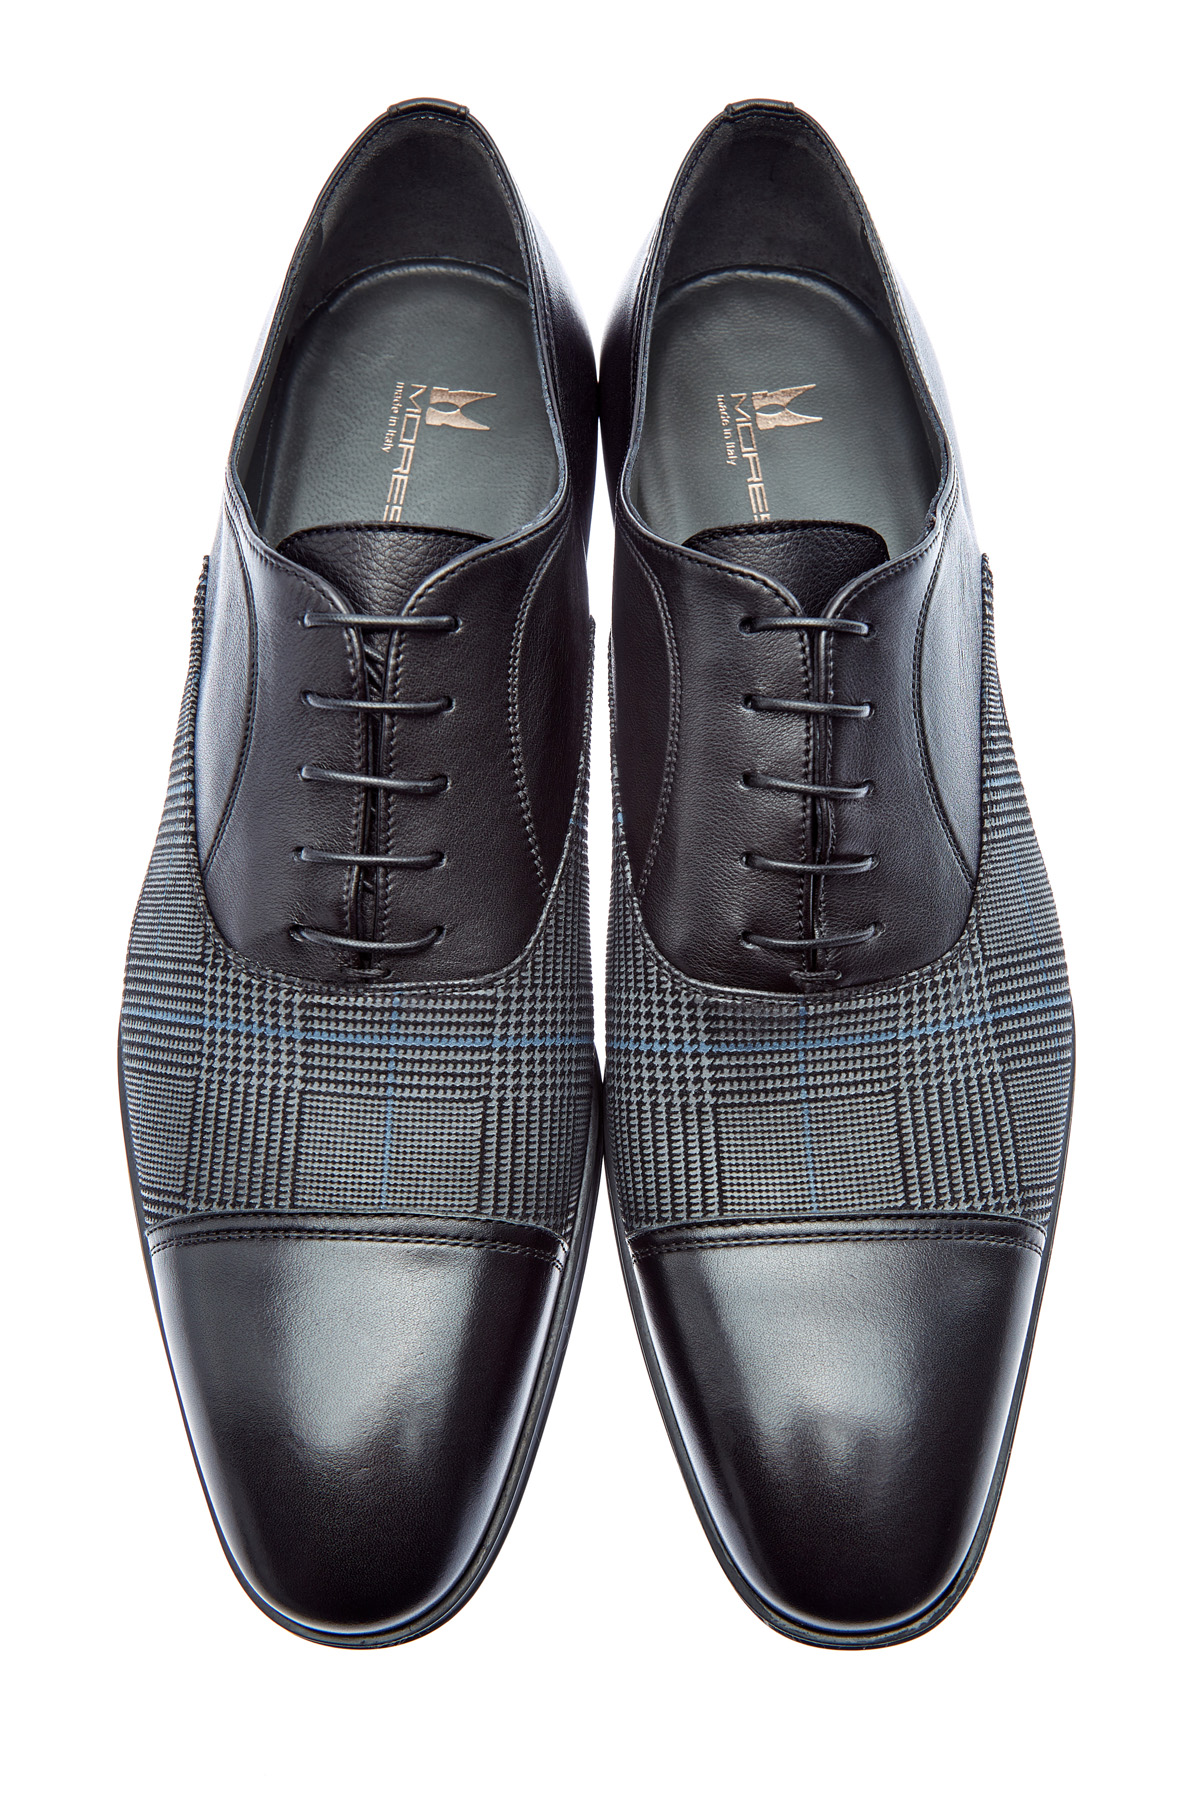 Туфли из кожи и ткани с принтом «Принц Уэльский» MORESCHI, цвет мульти, размер 40.5 - фото 5